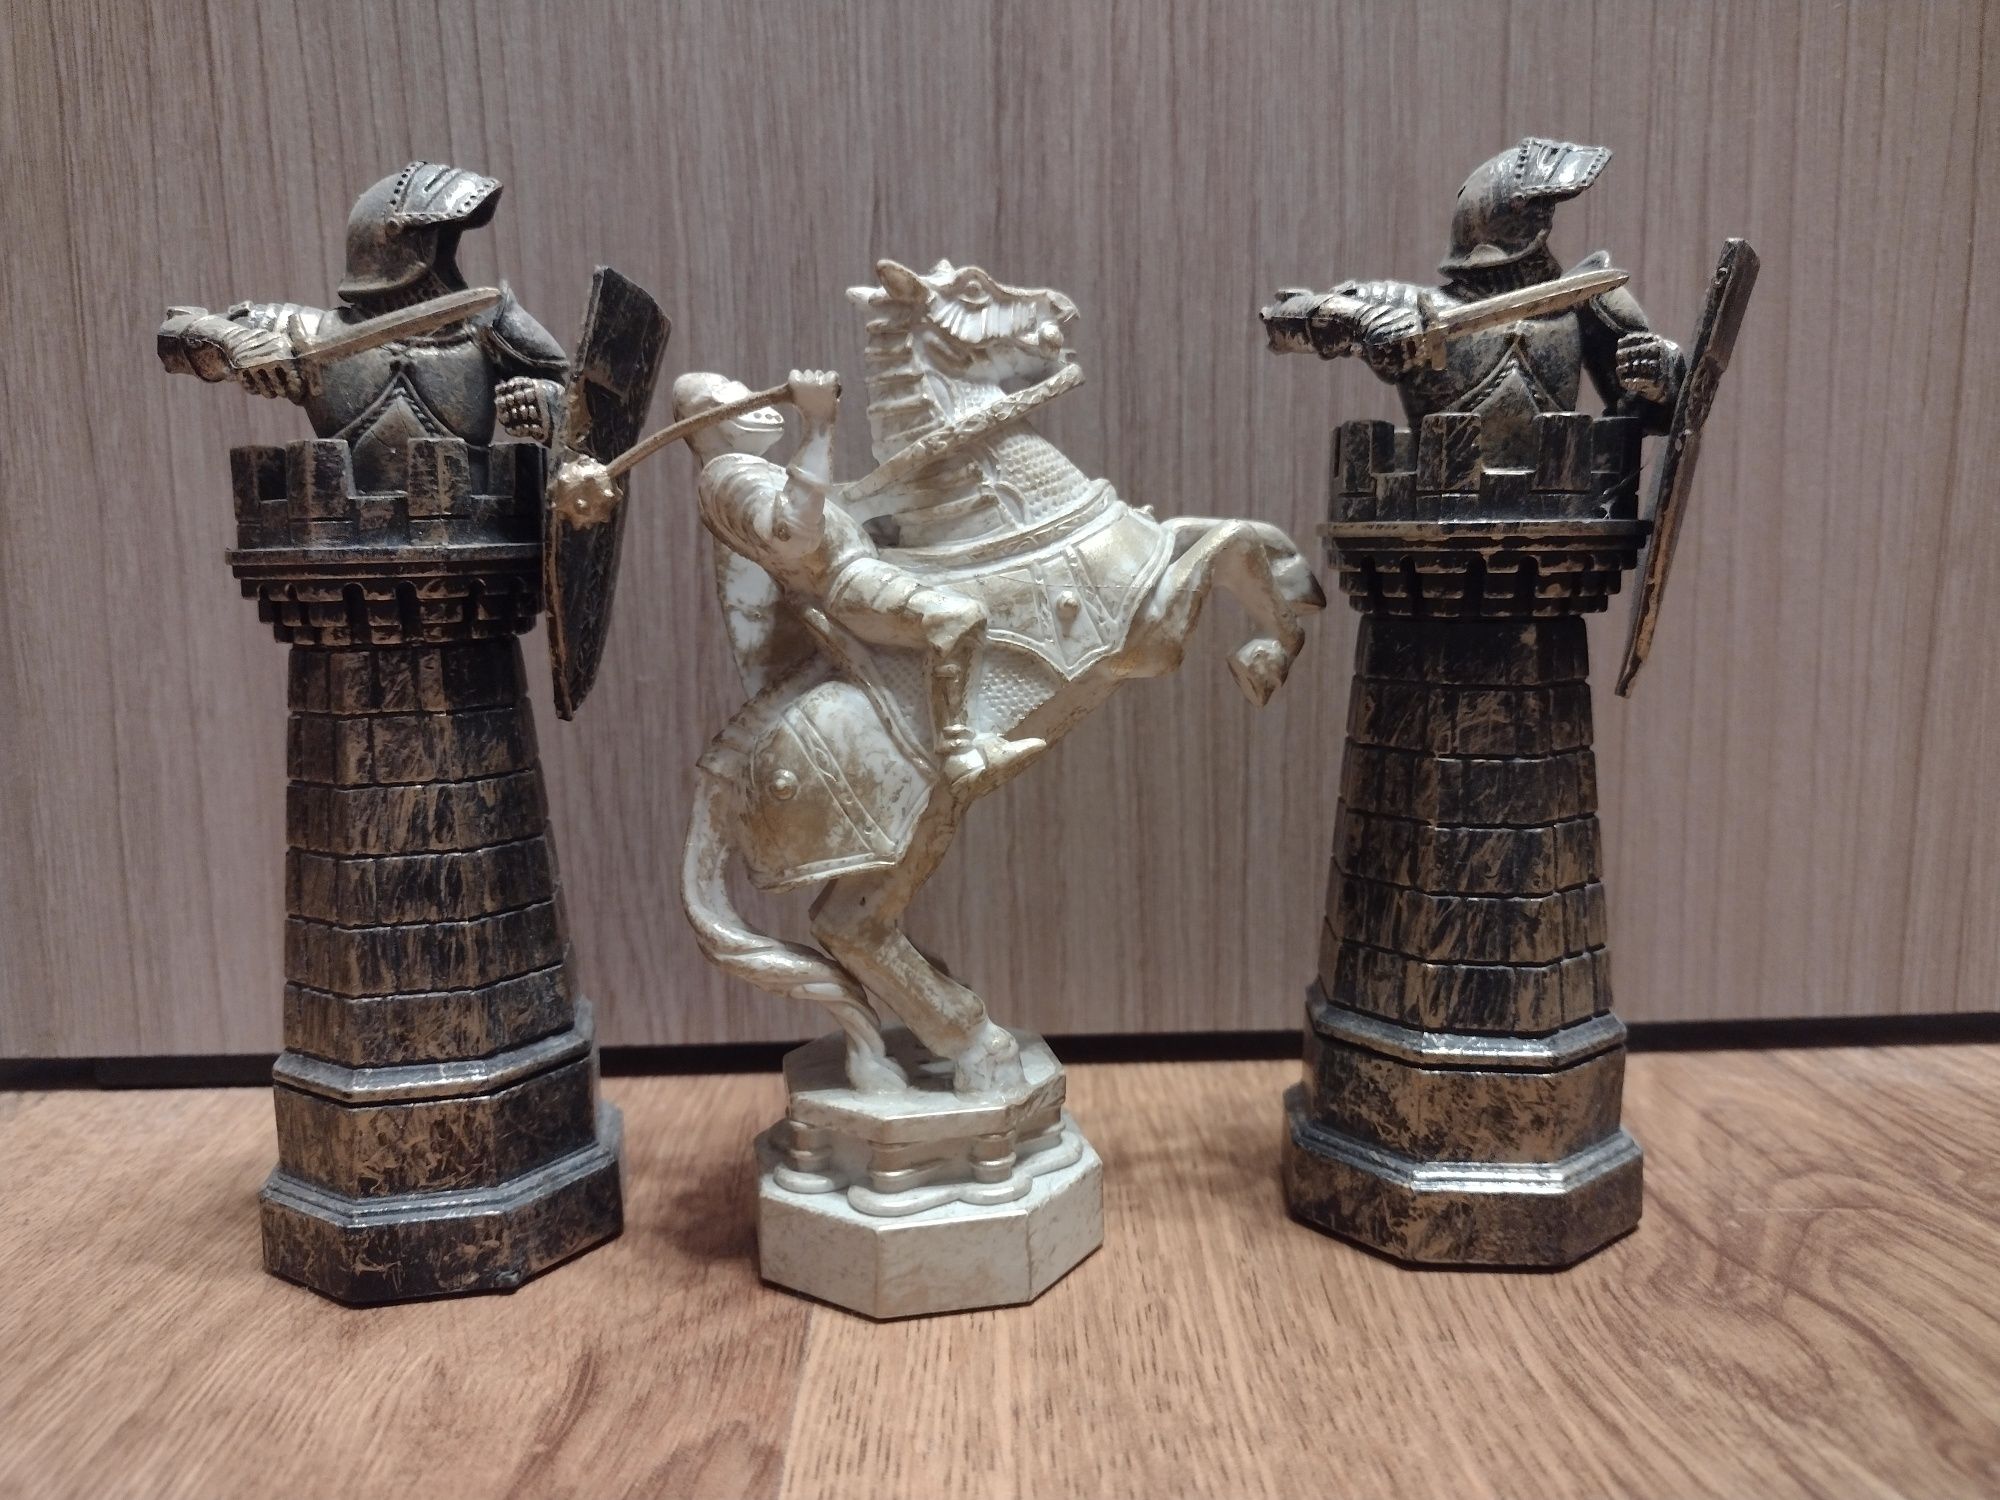 3 figury szachowe firmy Deagostini z serii Harry Potter